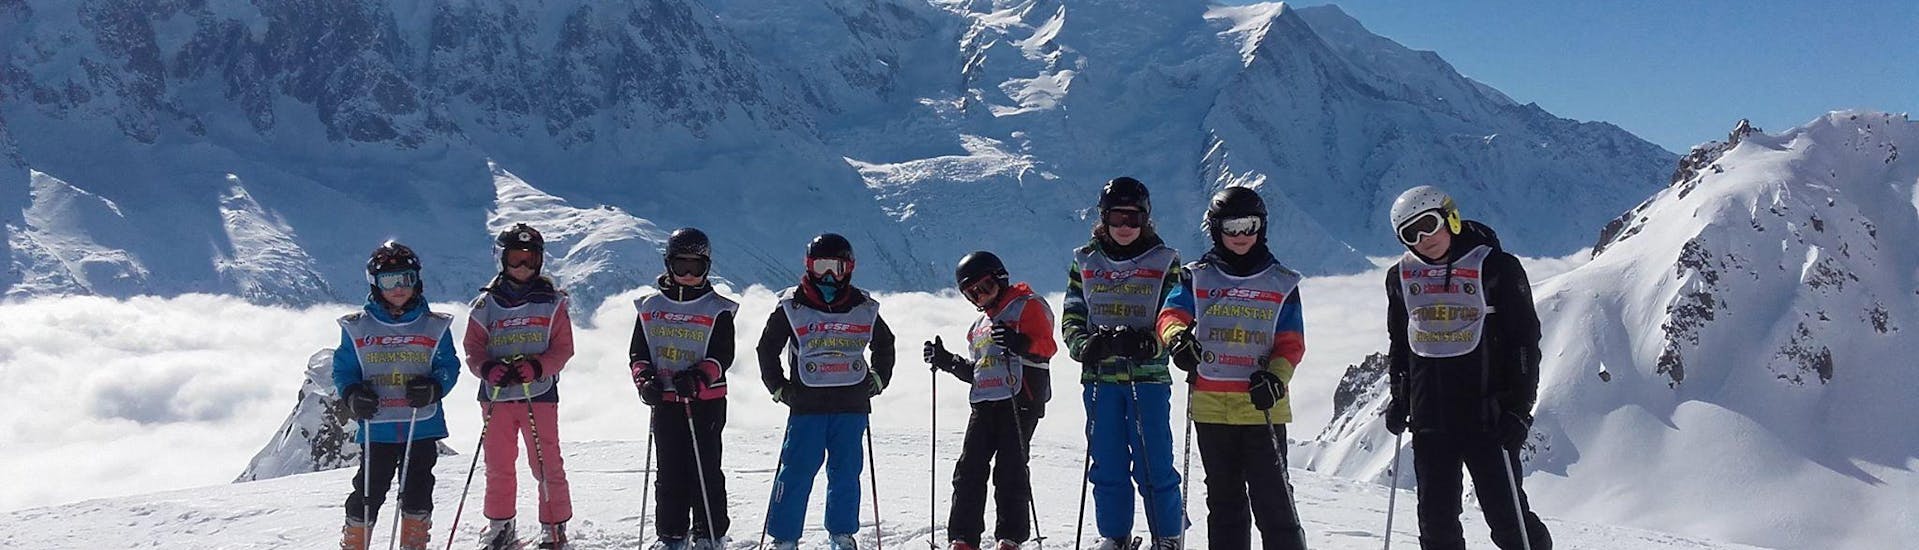 Skilessen voor kinderen vanaf 5 jaar - gevorderd.